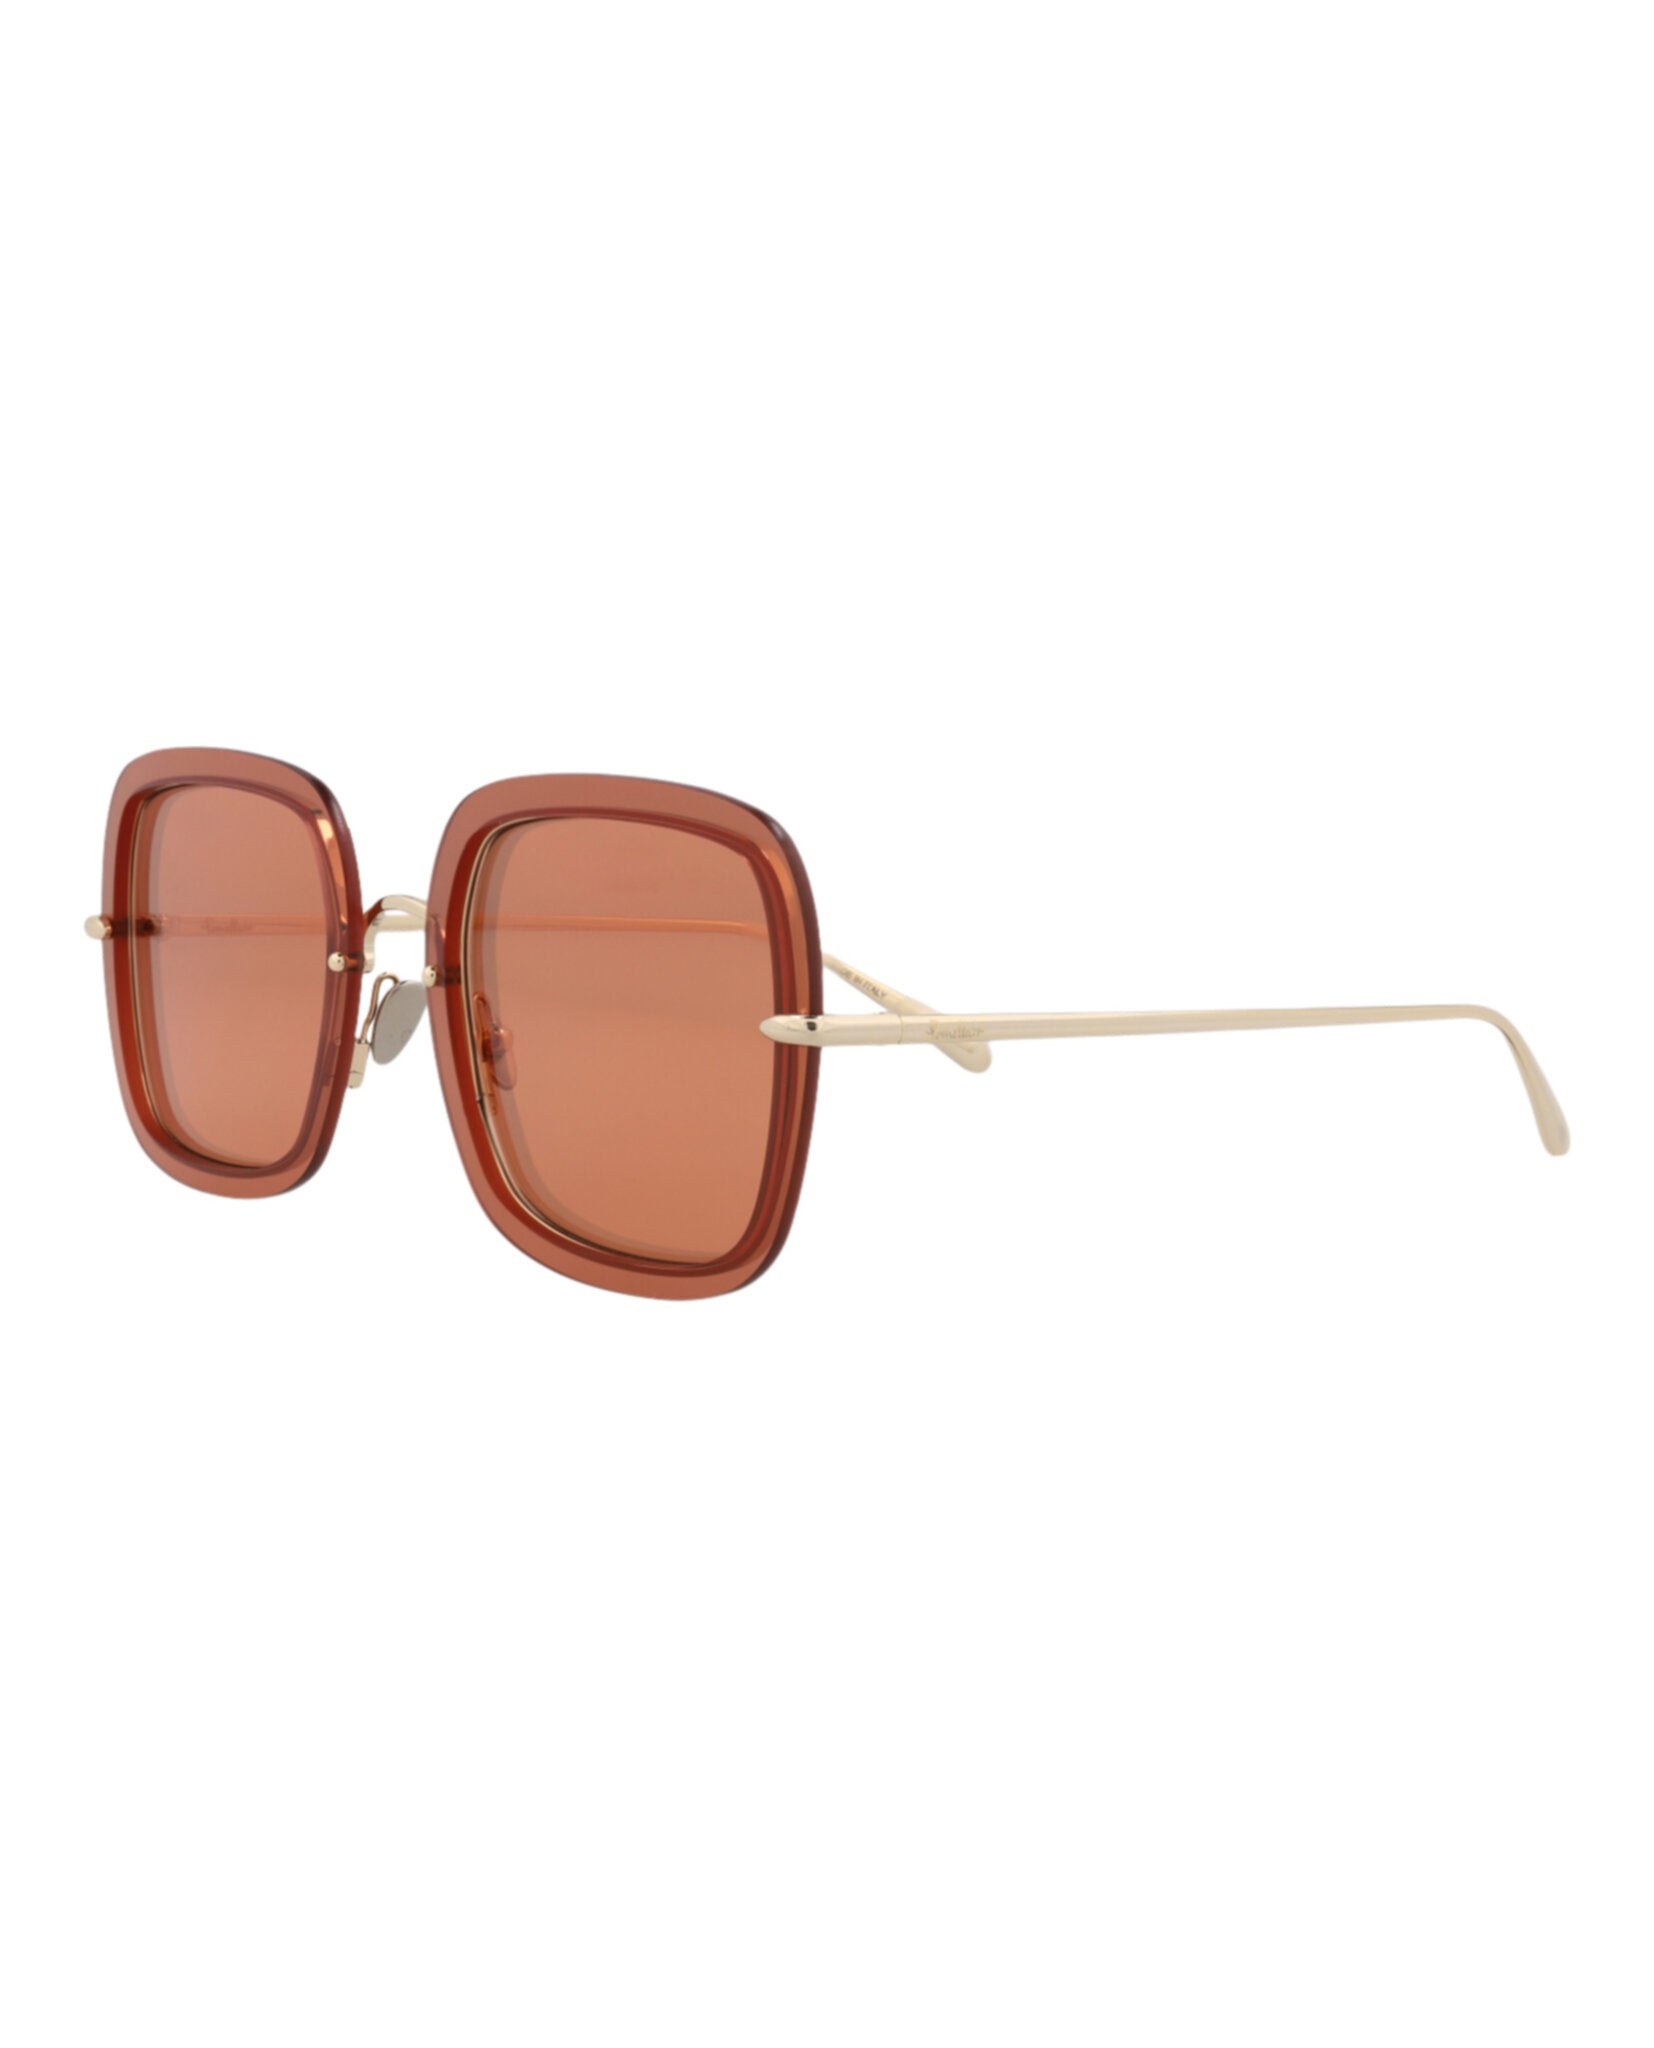 title:Pomellato Square-Frame Metal Sunglasses, style # PM0106S-30012010003;color:Gold Gold Orange